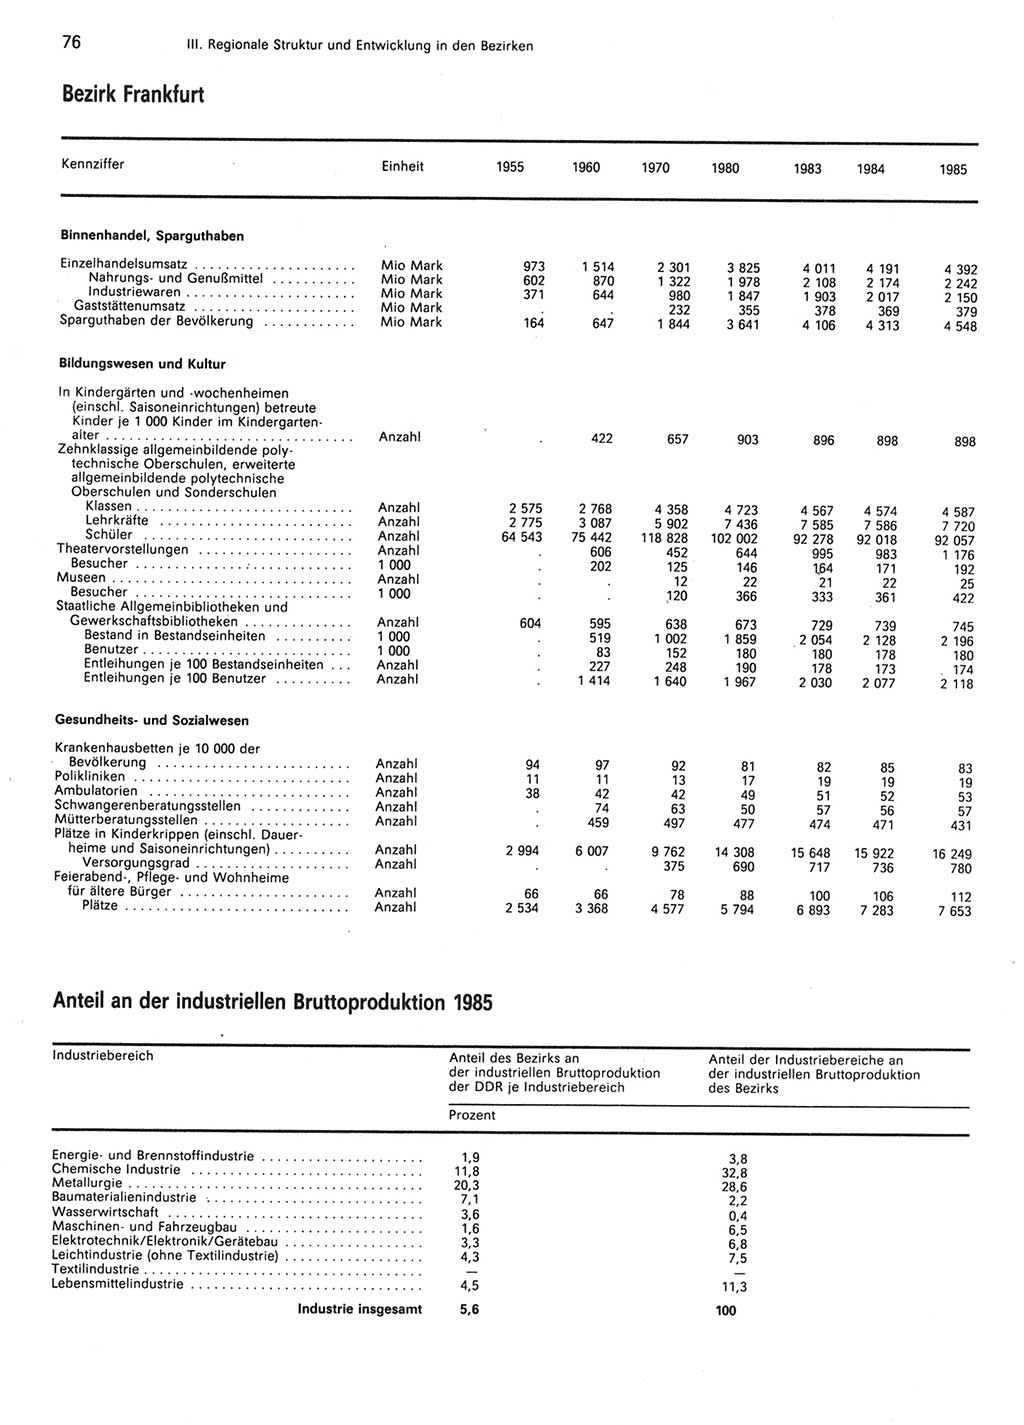 Statistisches Jahrbuch der Deutschen Demokratischen Republik (DDR) 1986, Seite 76 (Stat. Jb. DDR 1986, S. 76)